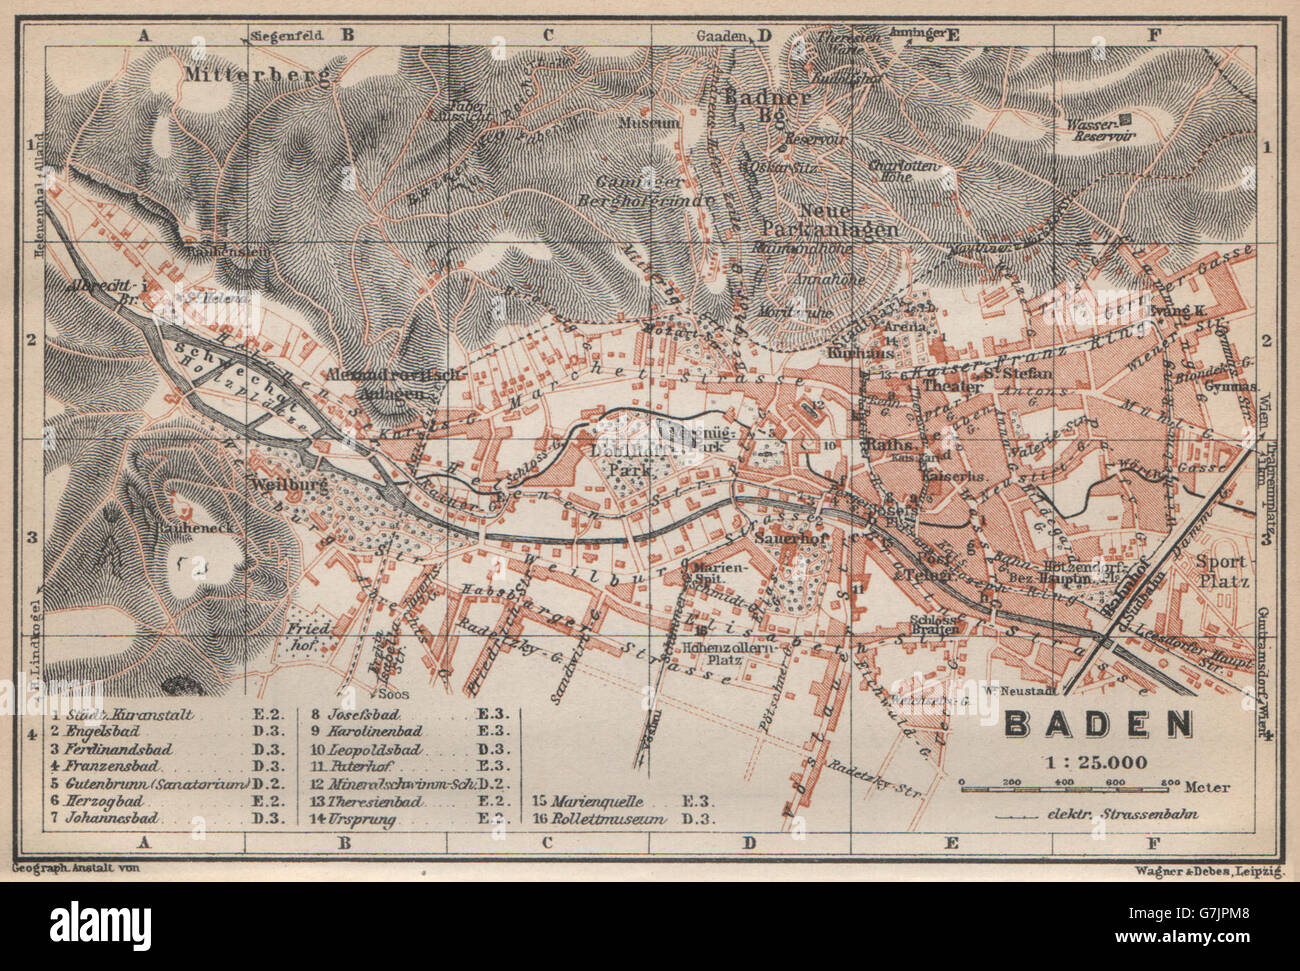 BADEN BEI WIEN /nr Vienna town city plan stadtplan. Austria Österreich, 1929 map Stock Photo